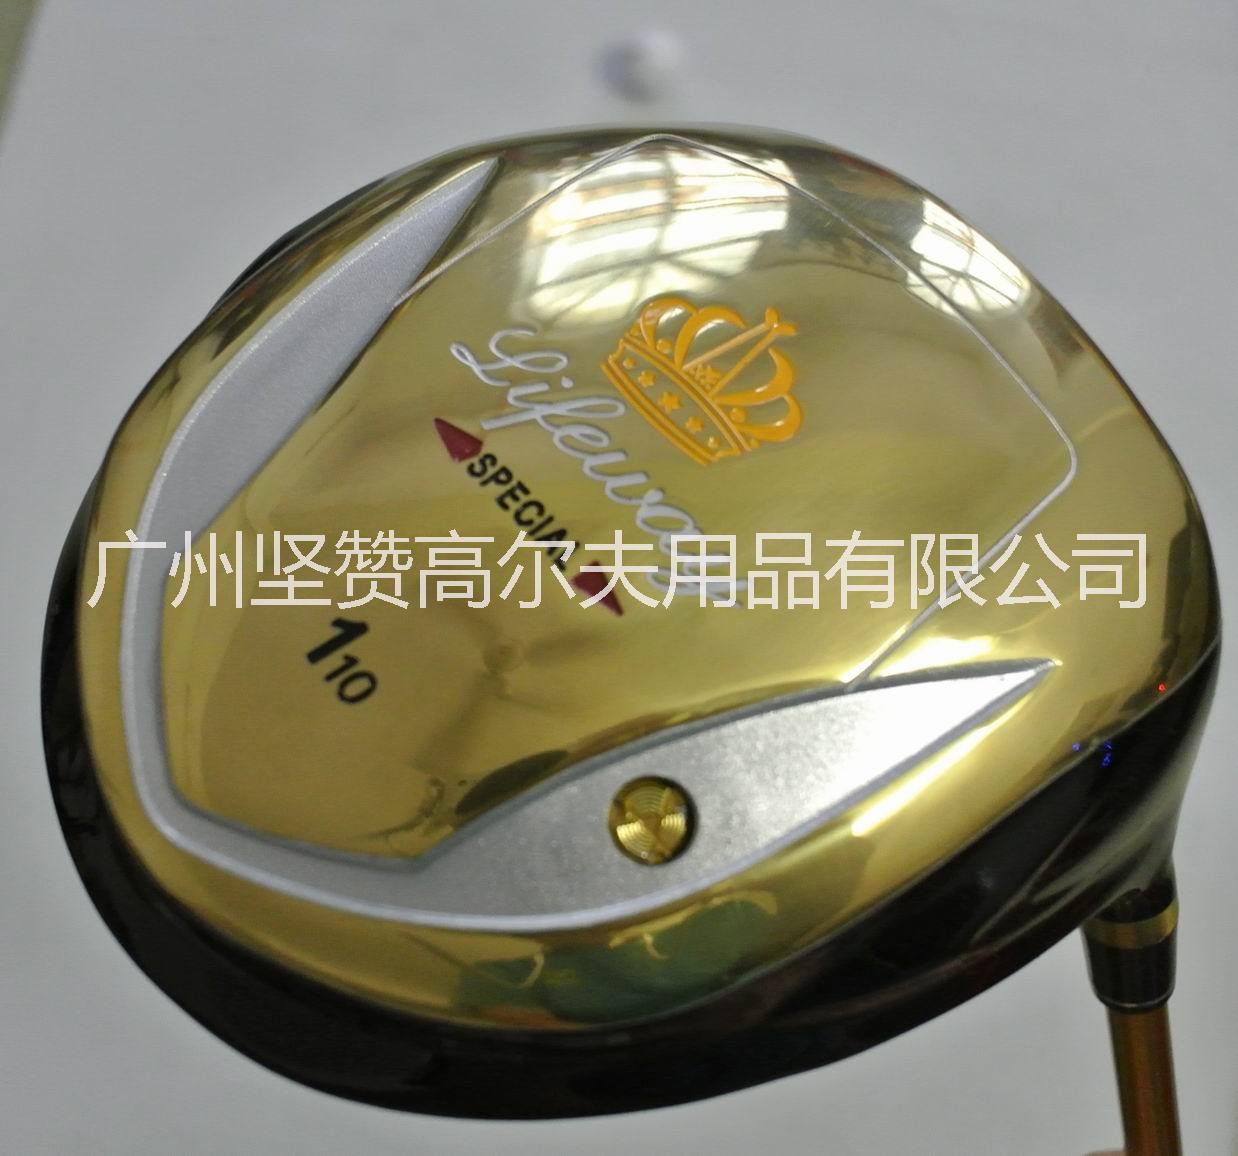 广州市高尔夫球杆 golf 高尔夫套杆 男士厂家高尔夫球杆 golf 高尔夫套杆 男士套杆 初学全套13支